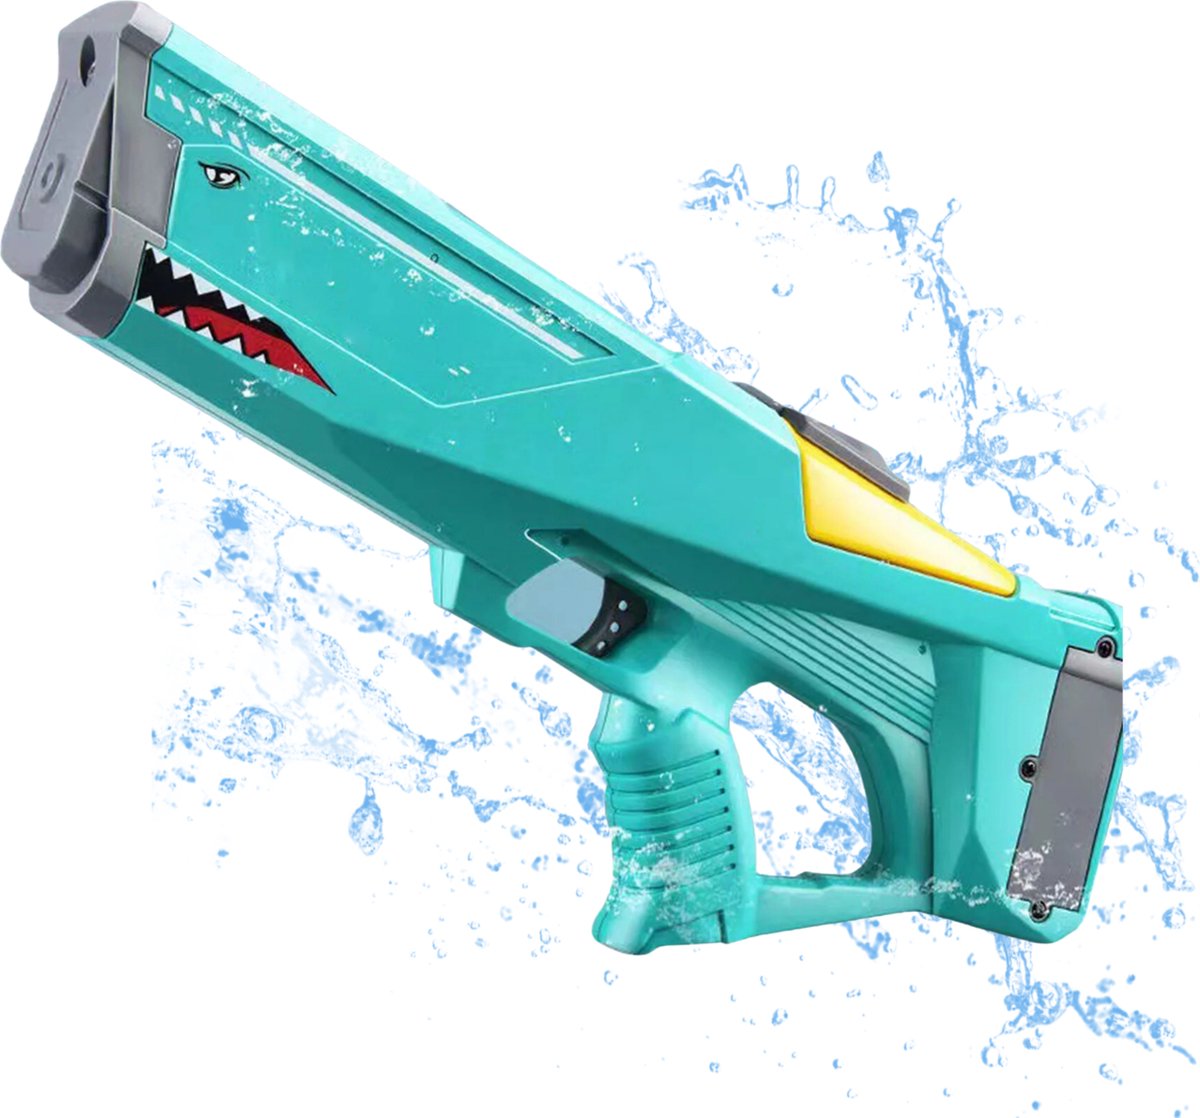 Modito waterpistool - Elektrisch waterpistool - Automatische watergun - Groen - Buitenspeelgoed